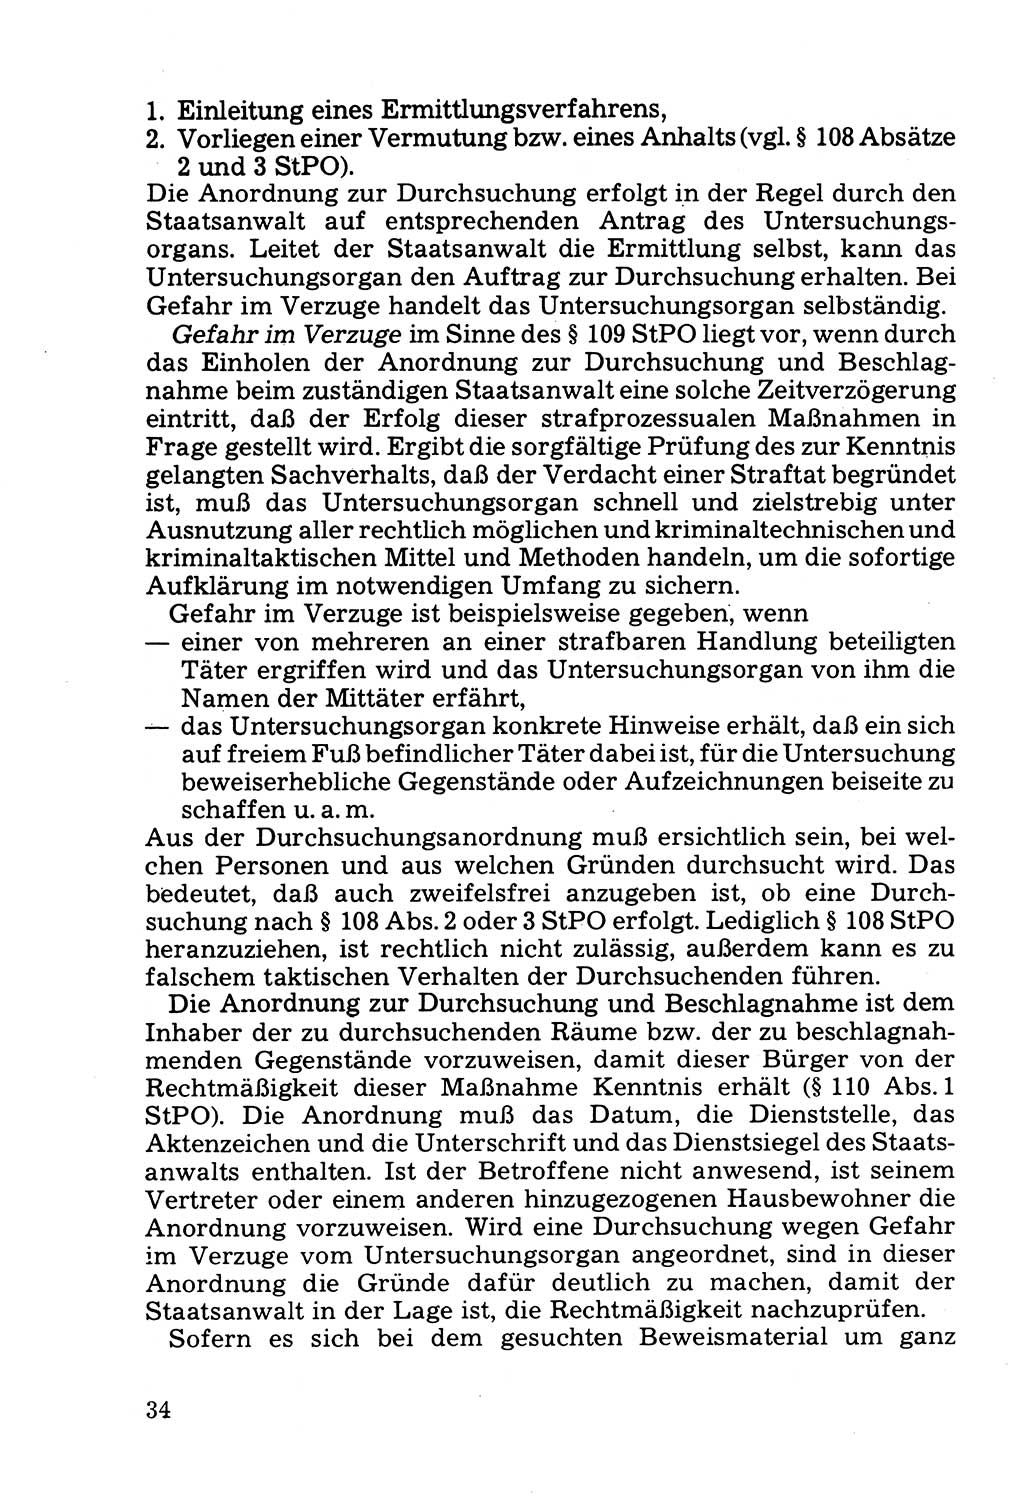 Die Durchsuchung und die Beschlagnahme [Deutsche Demokratische Republik (DDR)] 1979, Seite 34 (Durchs. Beschl. DDR 1979, S. 34)